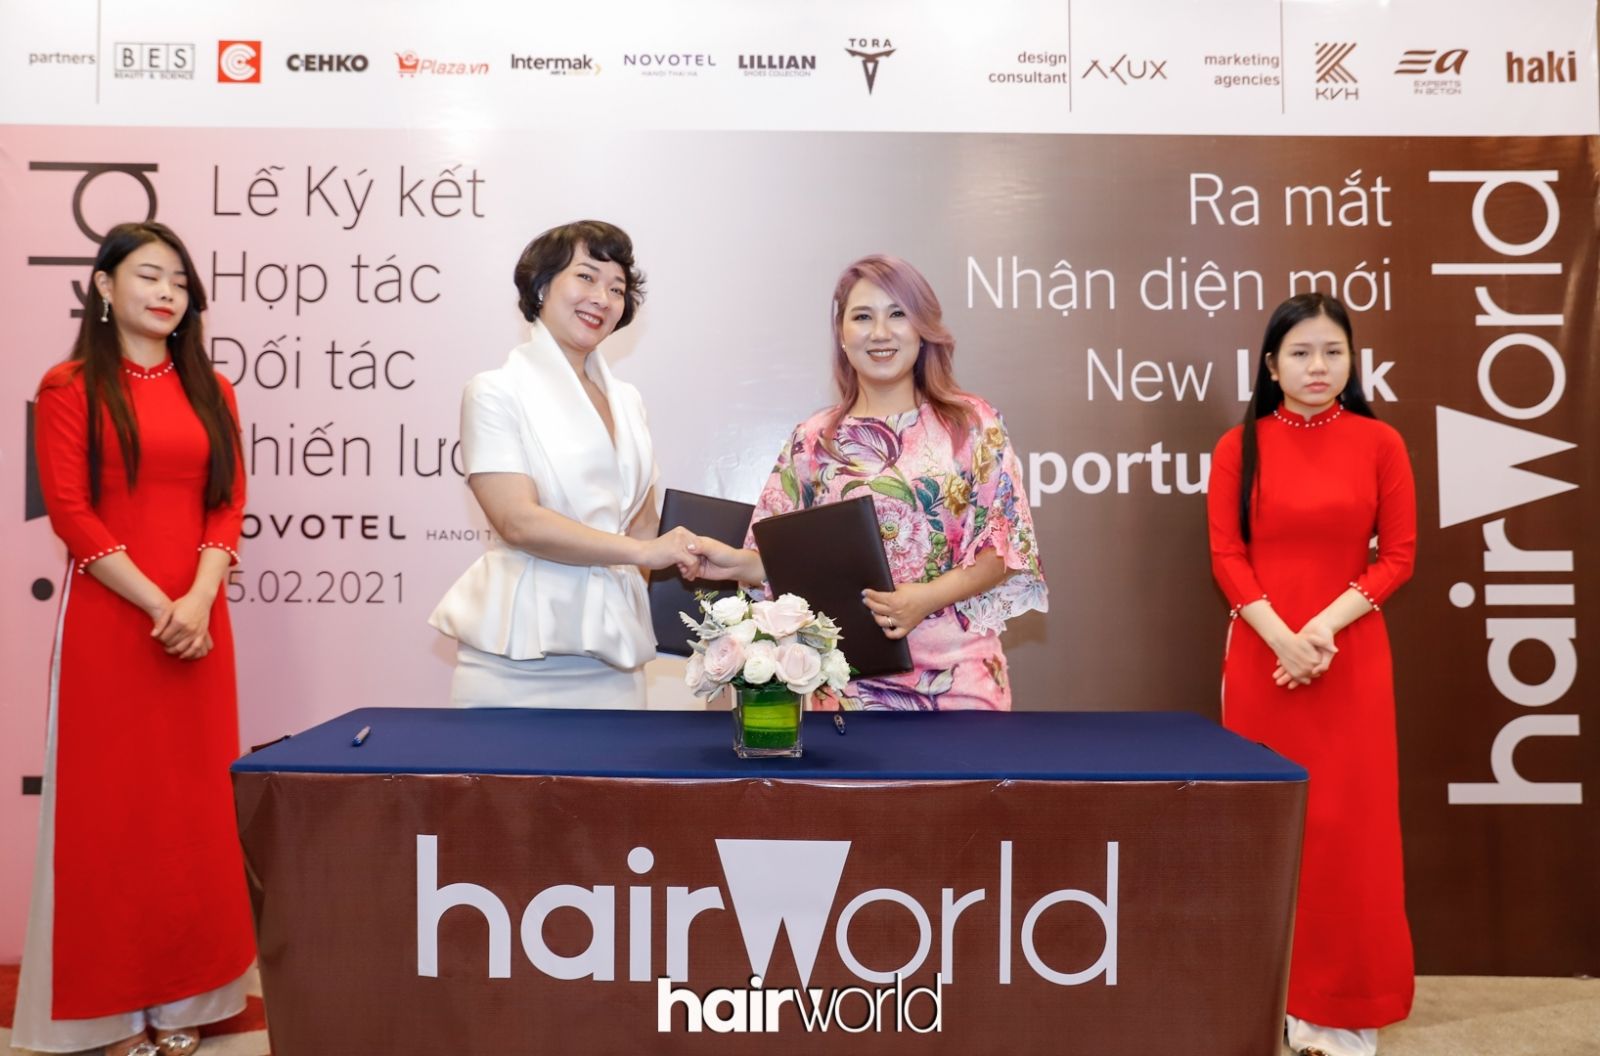 Cái bắt tay giữa Marchio và bà Vũ Kim Hoàn – Giám đốc đối ngoại Haki Advertising